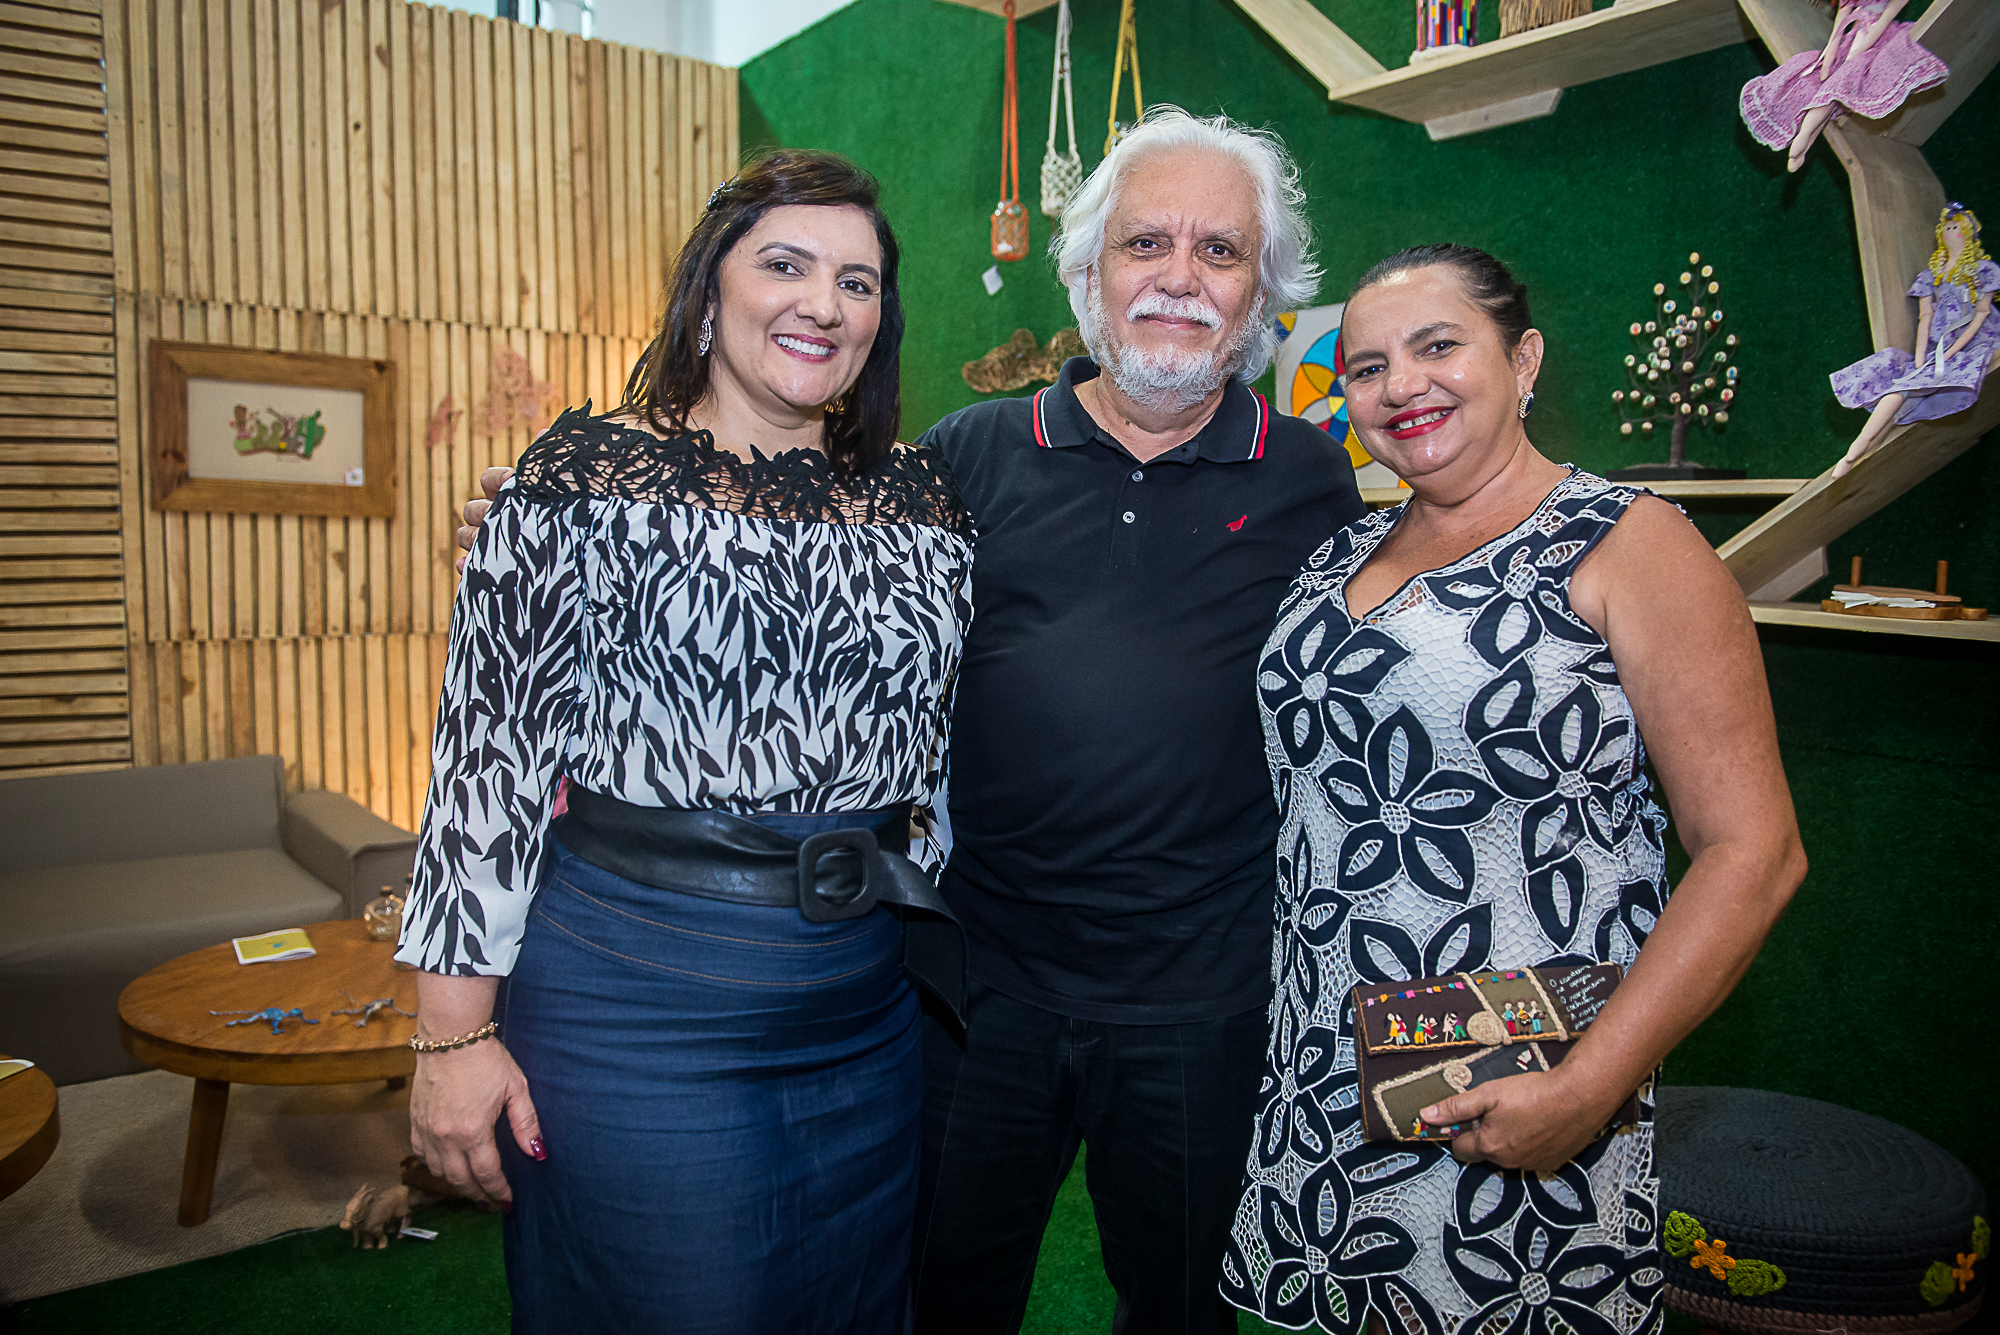 Sebrae Ceará lança coleção de artesanato inspirada em vitrais de Fortaleza